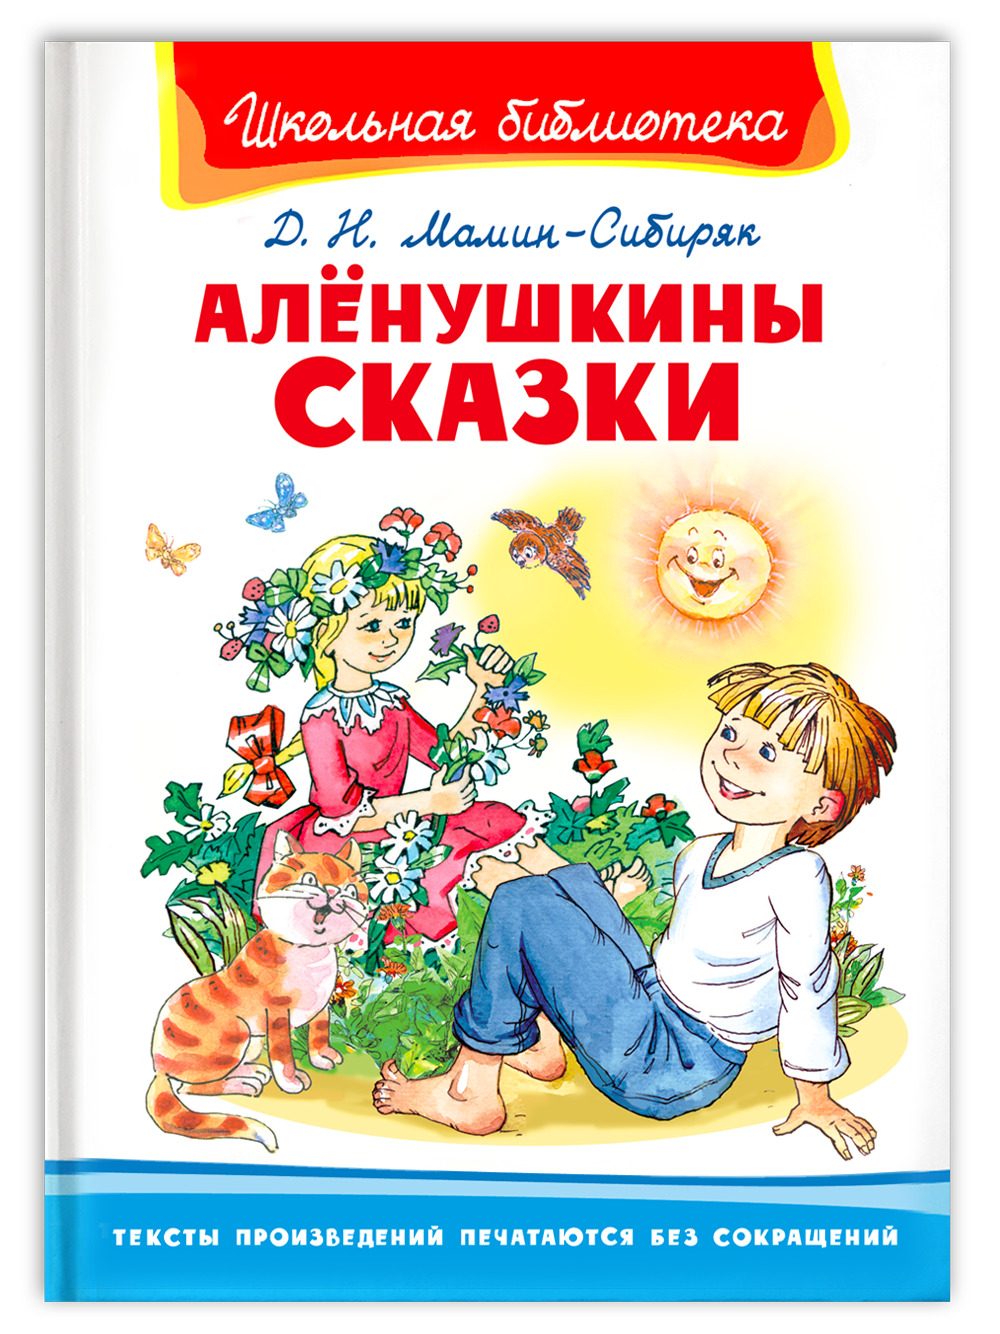 Книга Аленушкины сказки мамин-Сибиряк